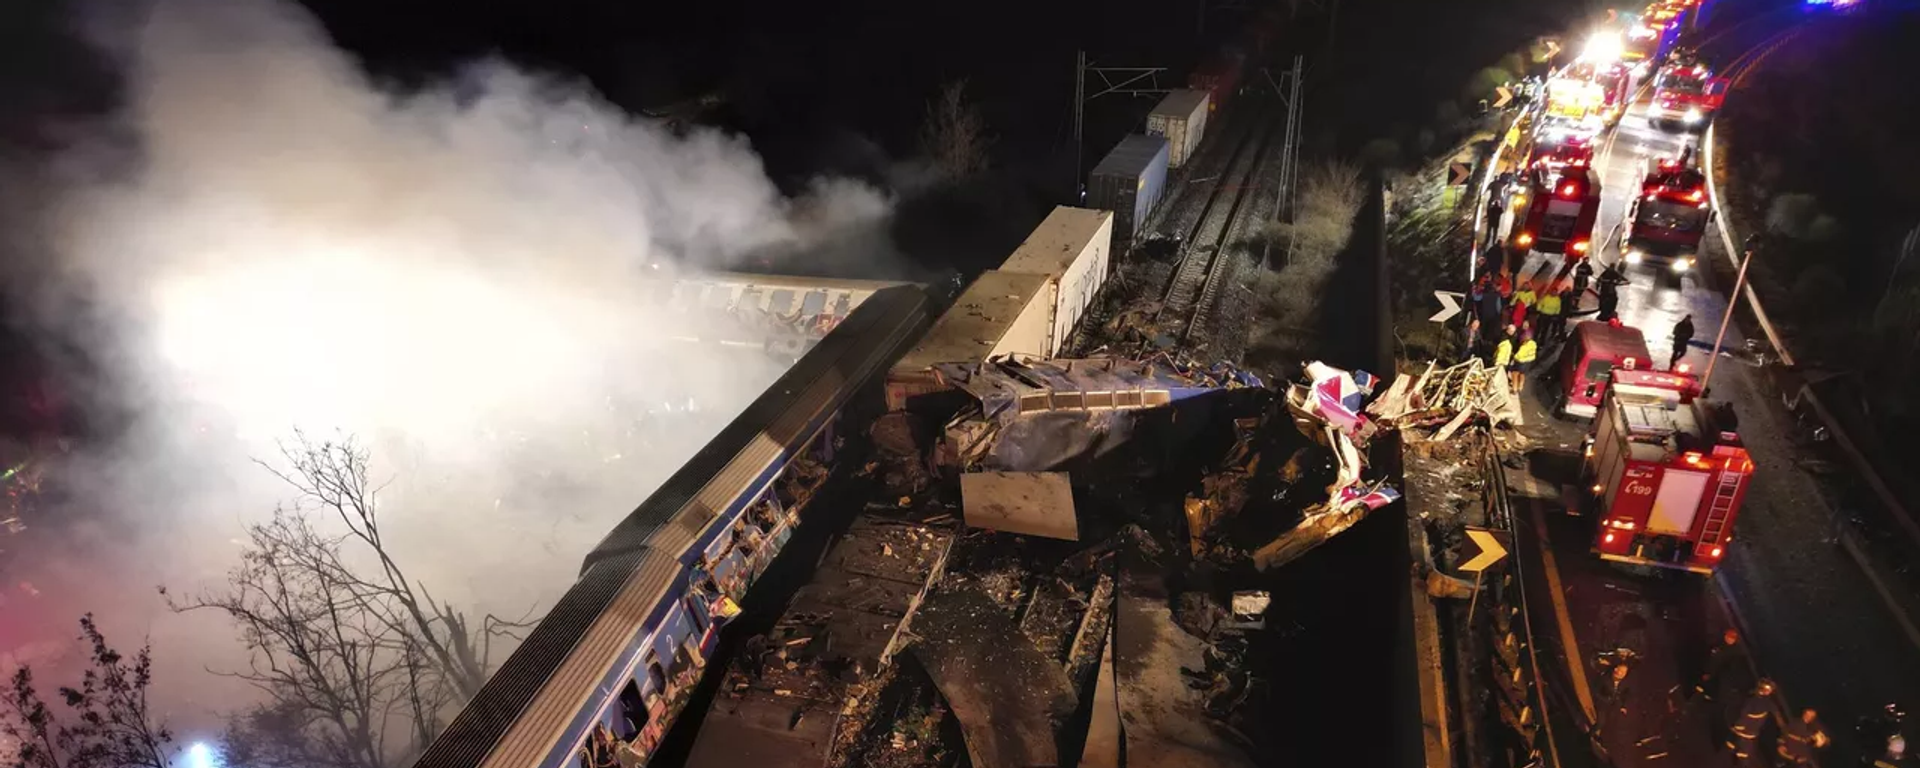 Yunanistan'ın Larissa kentinde iki tren çarpıştı. Söz konusu kazada ilk belirlemelere göre 16 kişi hayatını kaybetti, 85 kişi de yaralandı. - Sputnik Türkiye, 1920, 22.03.2023